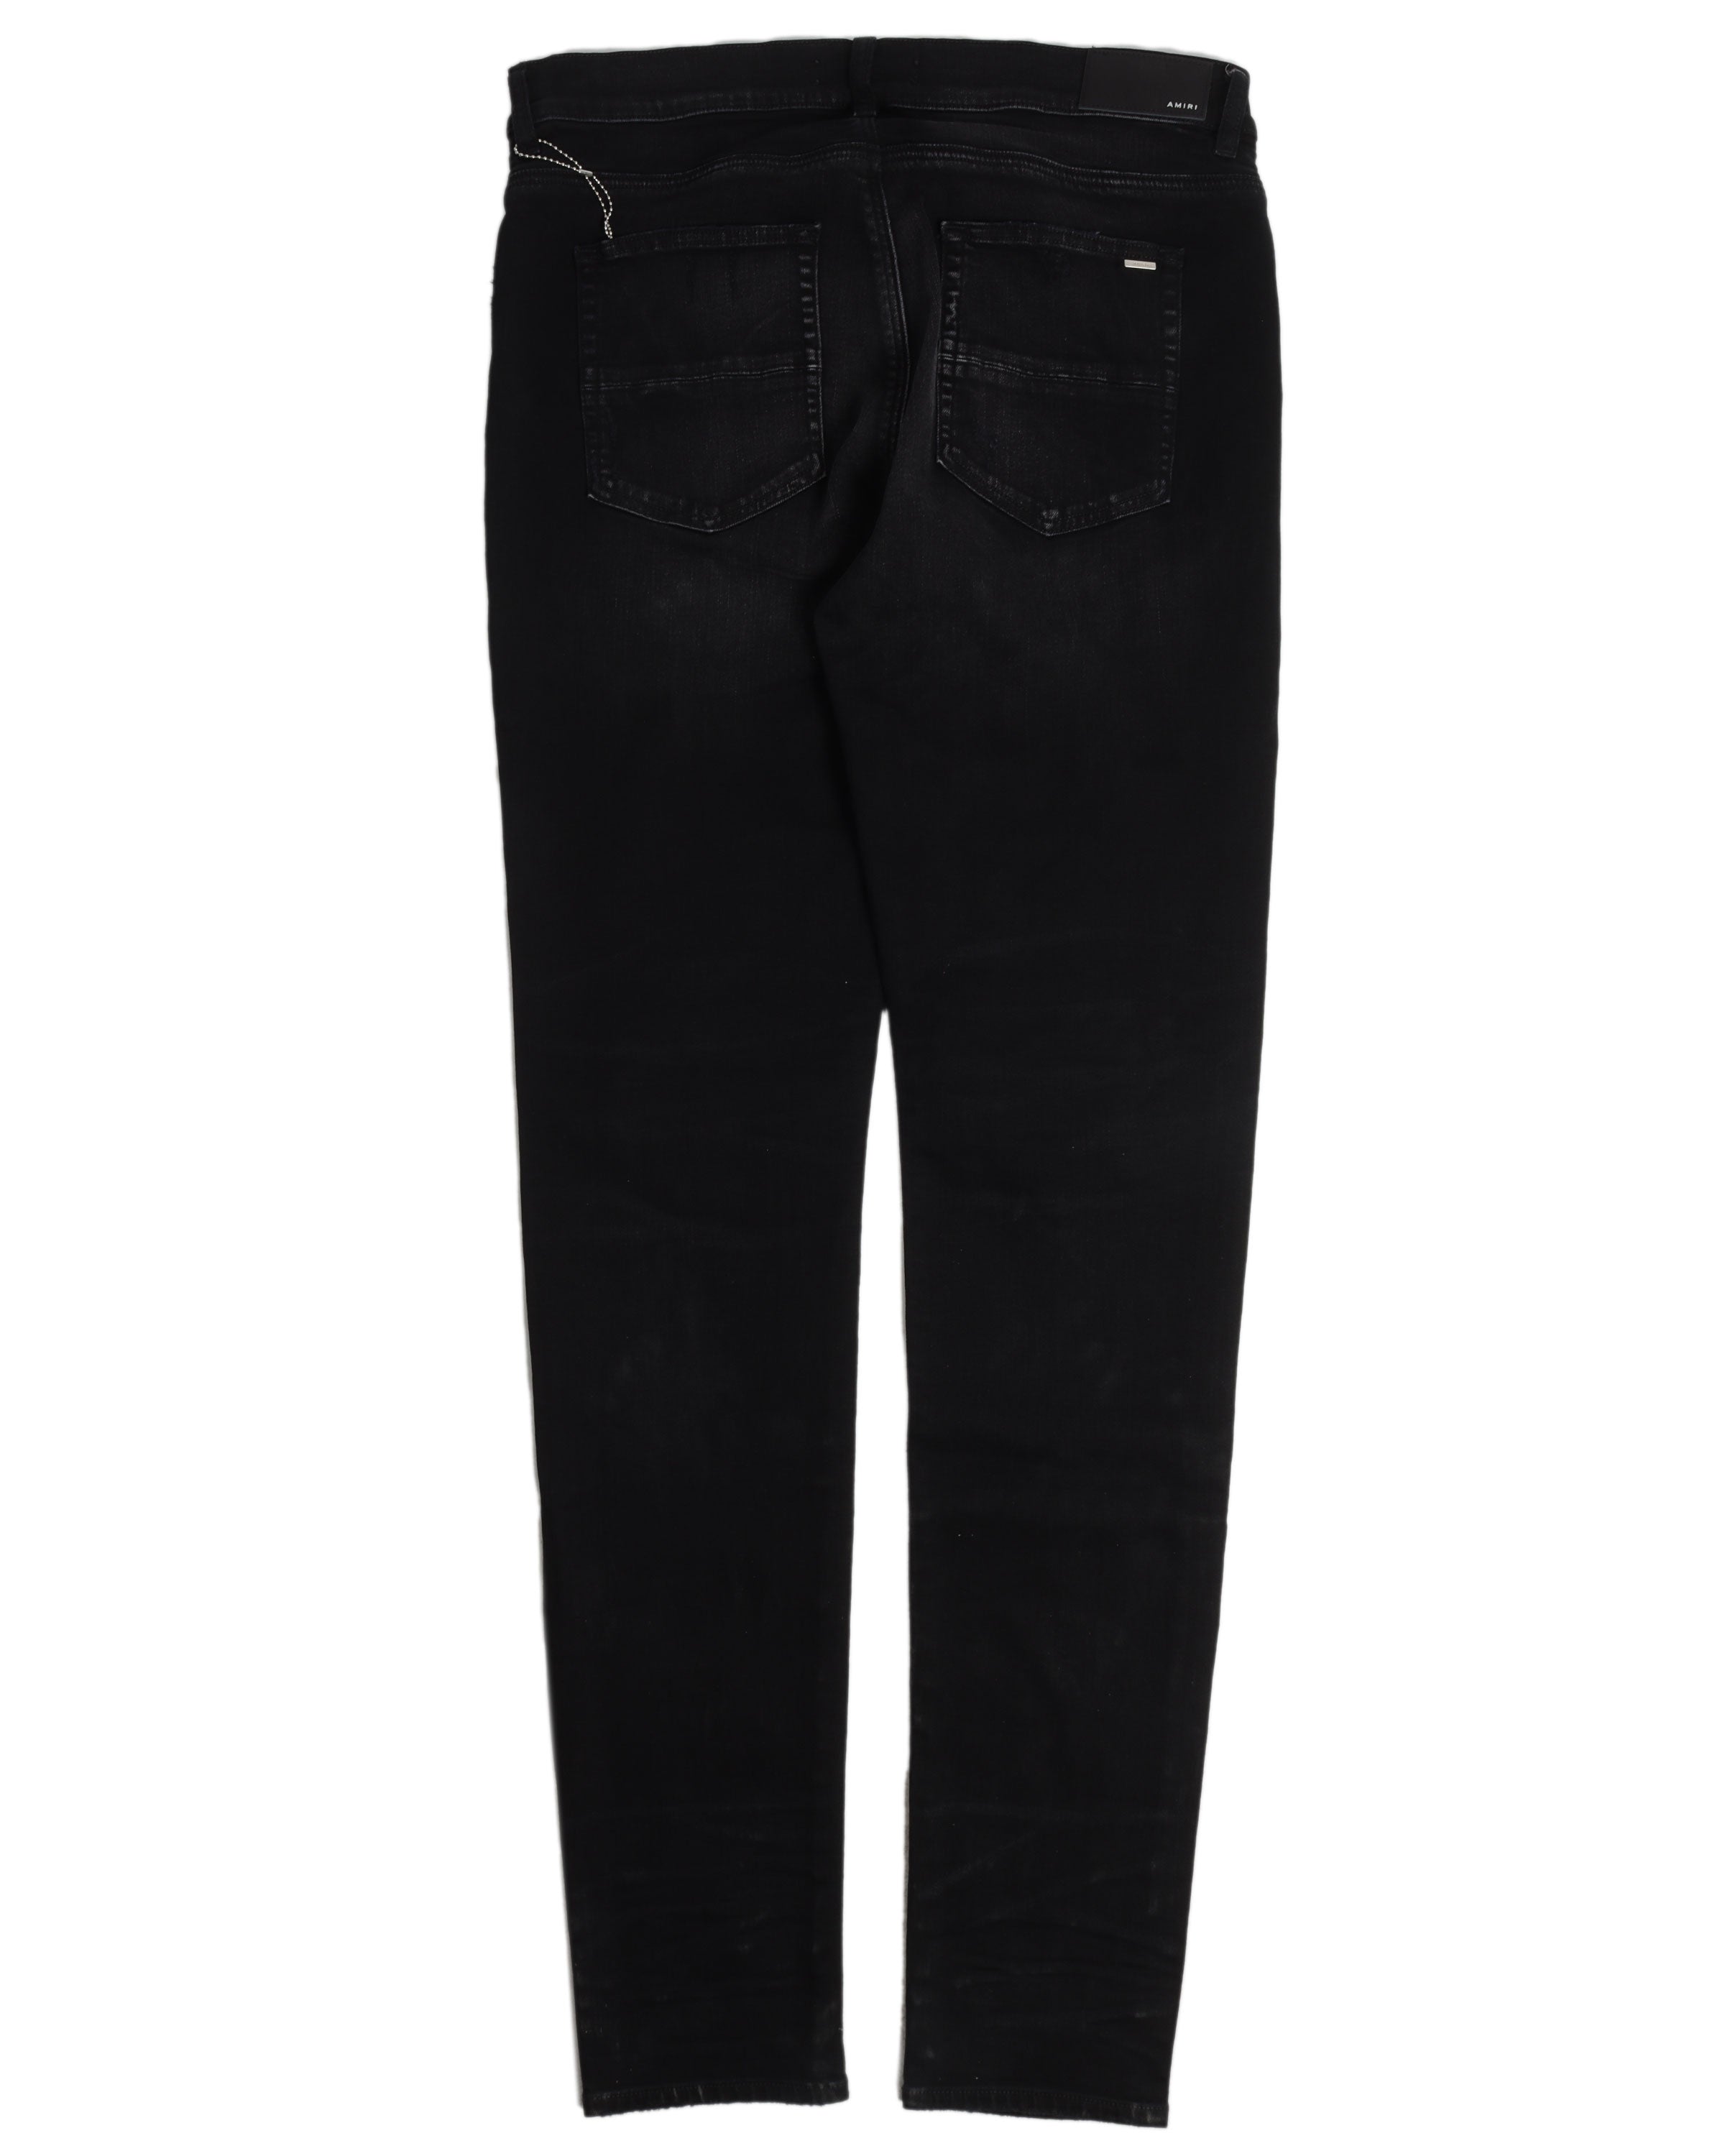 MX1 Bandana Jeans